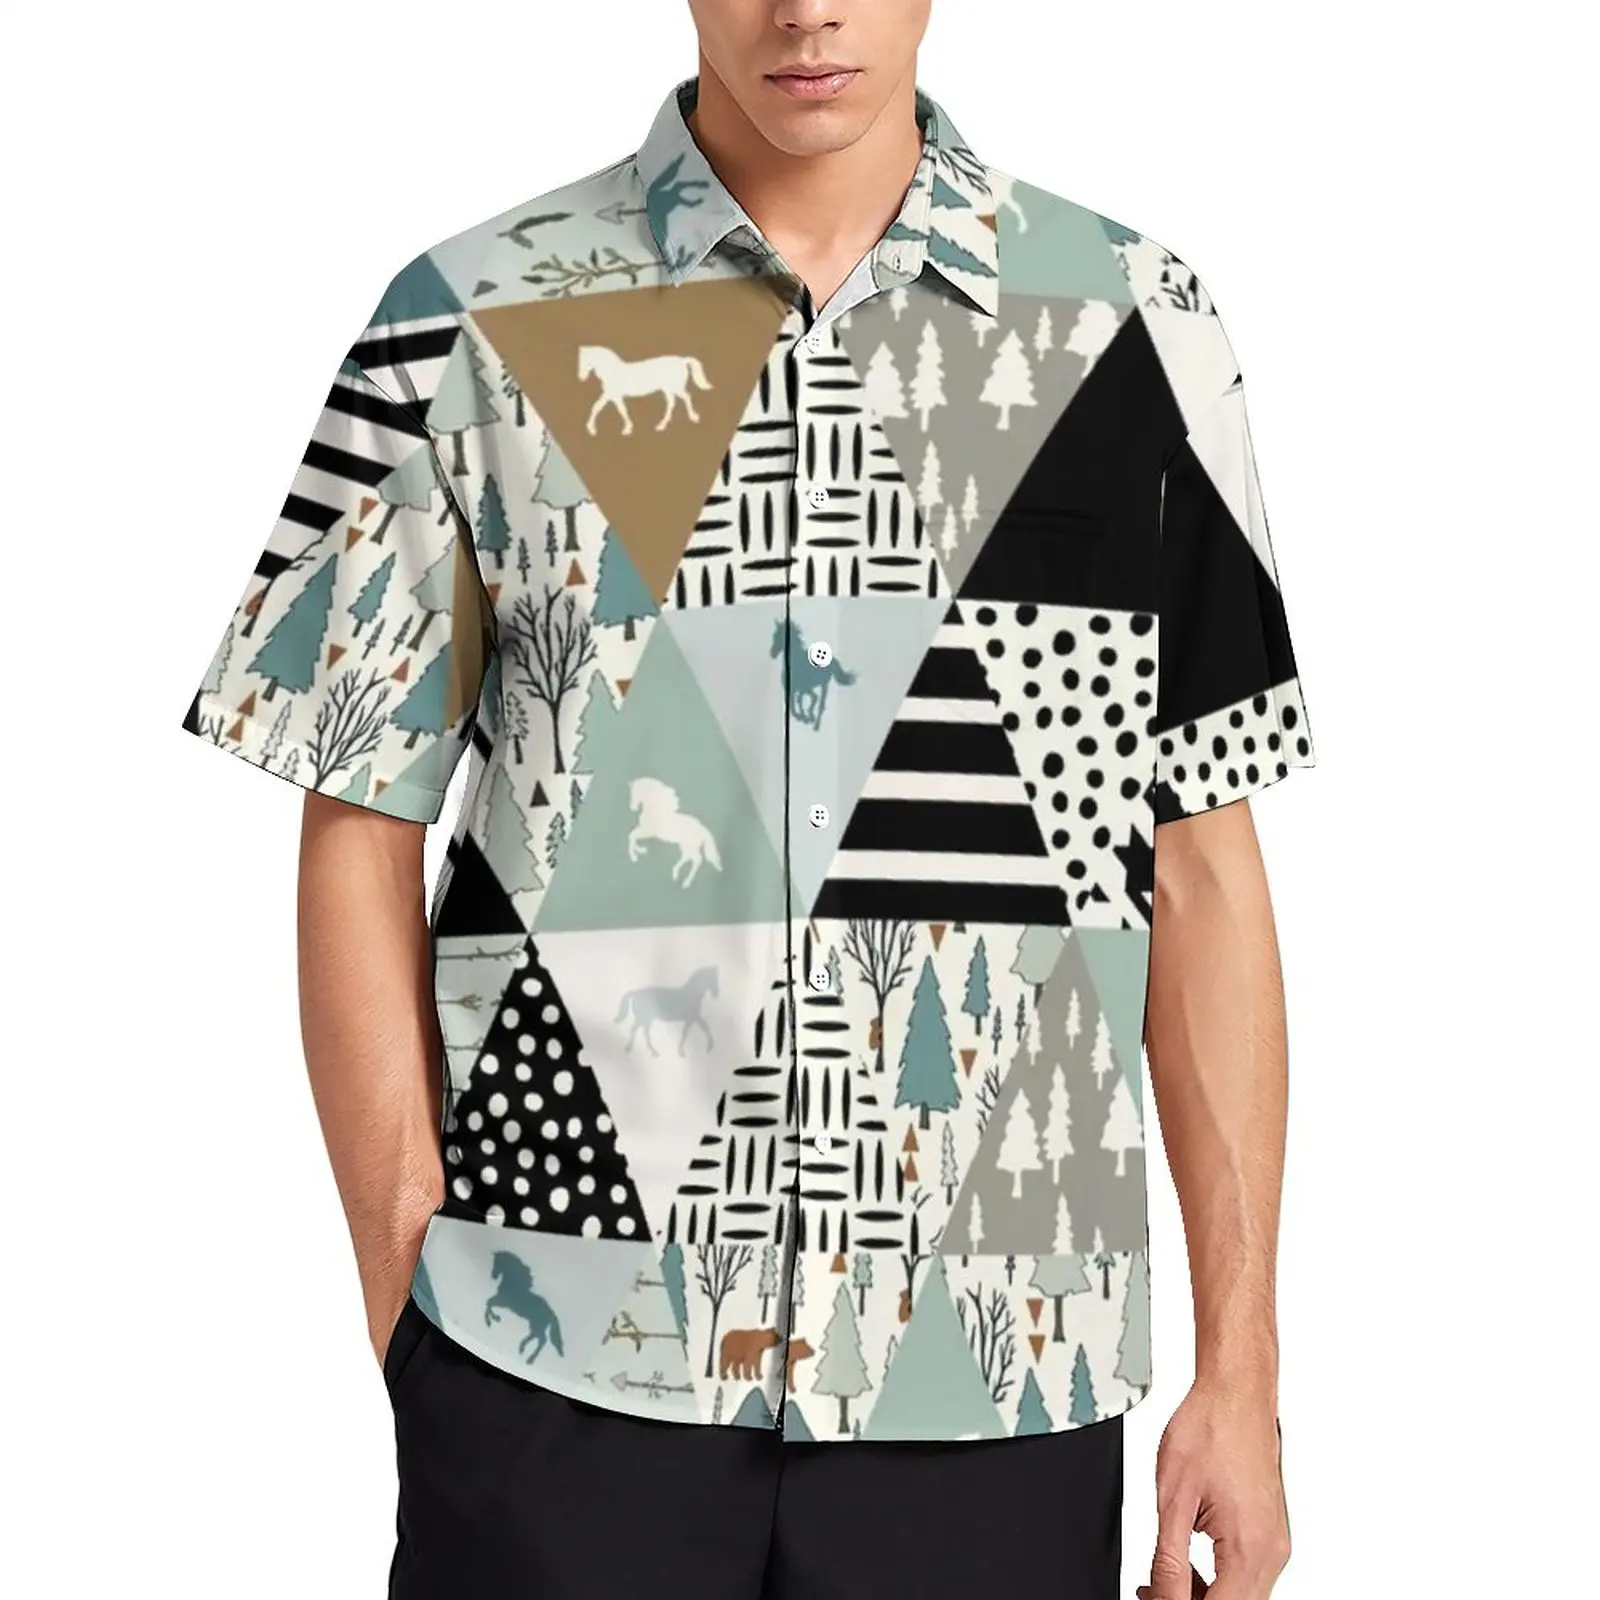 

Треугольная Лоскутная Повседневная рубашка лошади модная пляжная Свободная рубашка для влюбленных лошадей Гавайская стильная блузка Топ с коротким рукавом большого размера